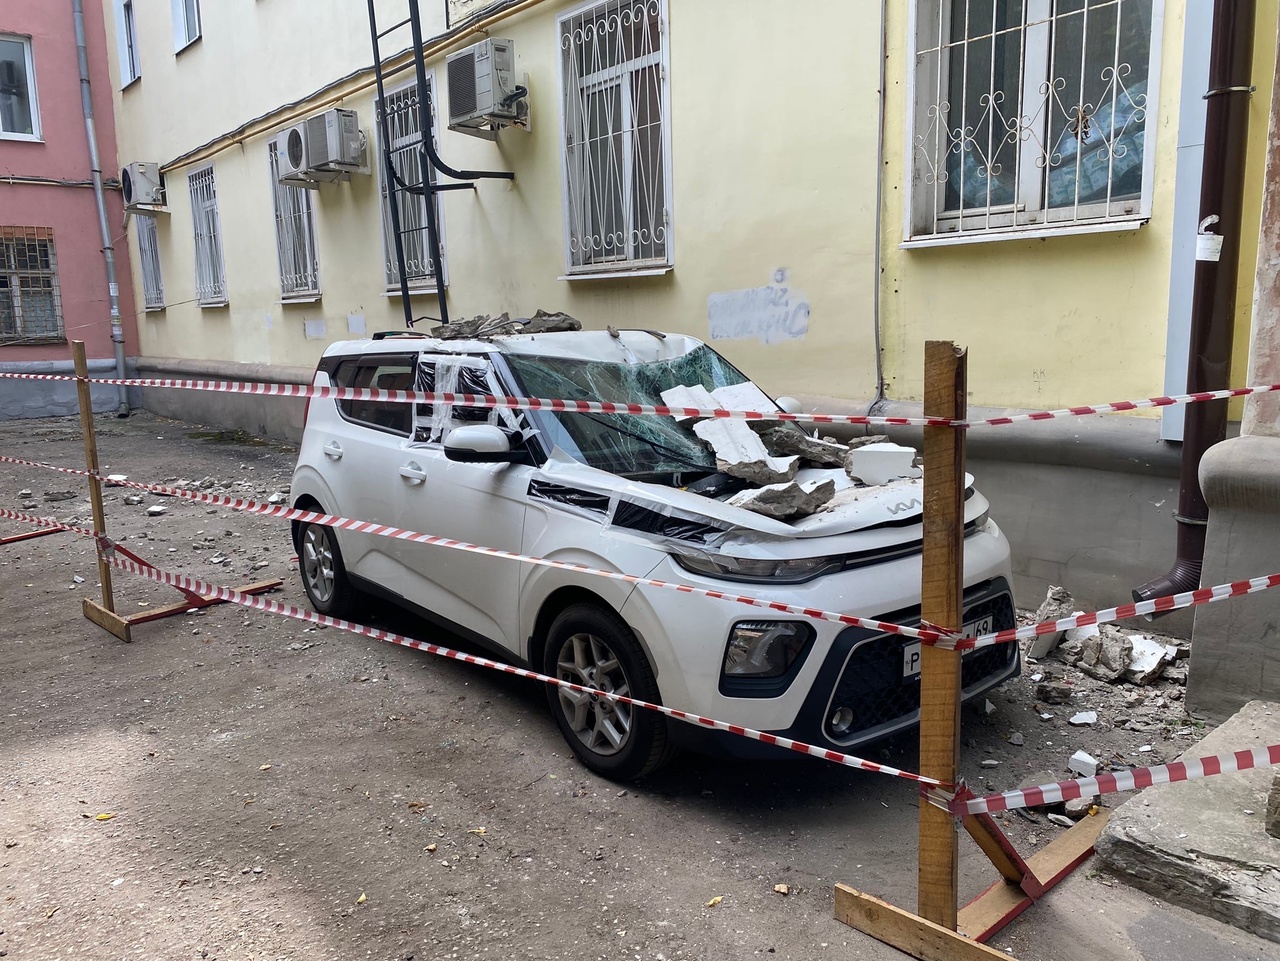 Кирпичи рухнули на автомобиль с кровли дома в Заволжском районе Твери - новости Афанасий